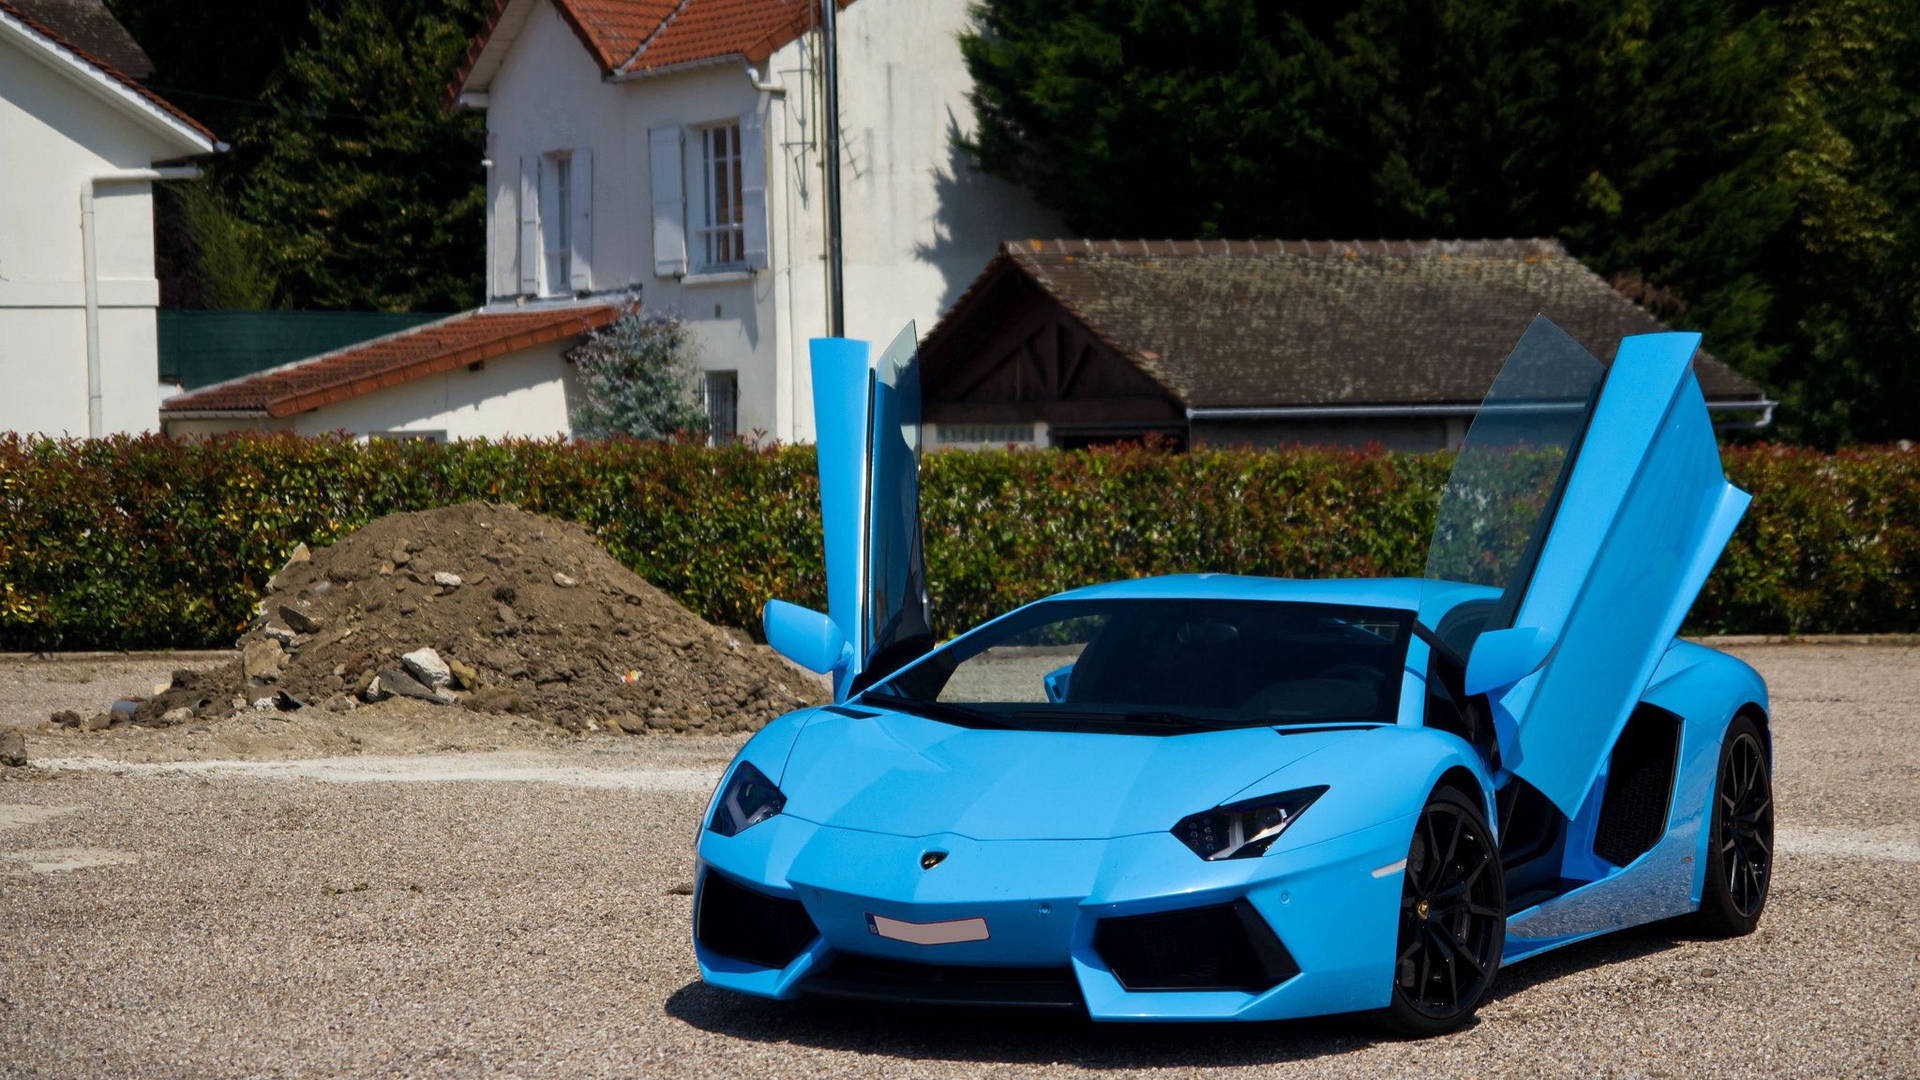 Sky Blue Lamborghini Aventador Doors Up Wallpaper